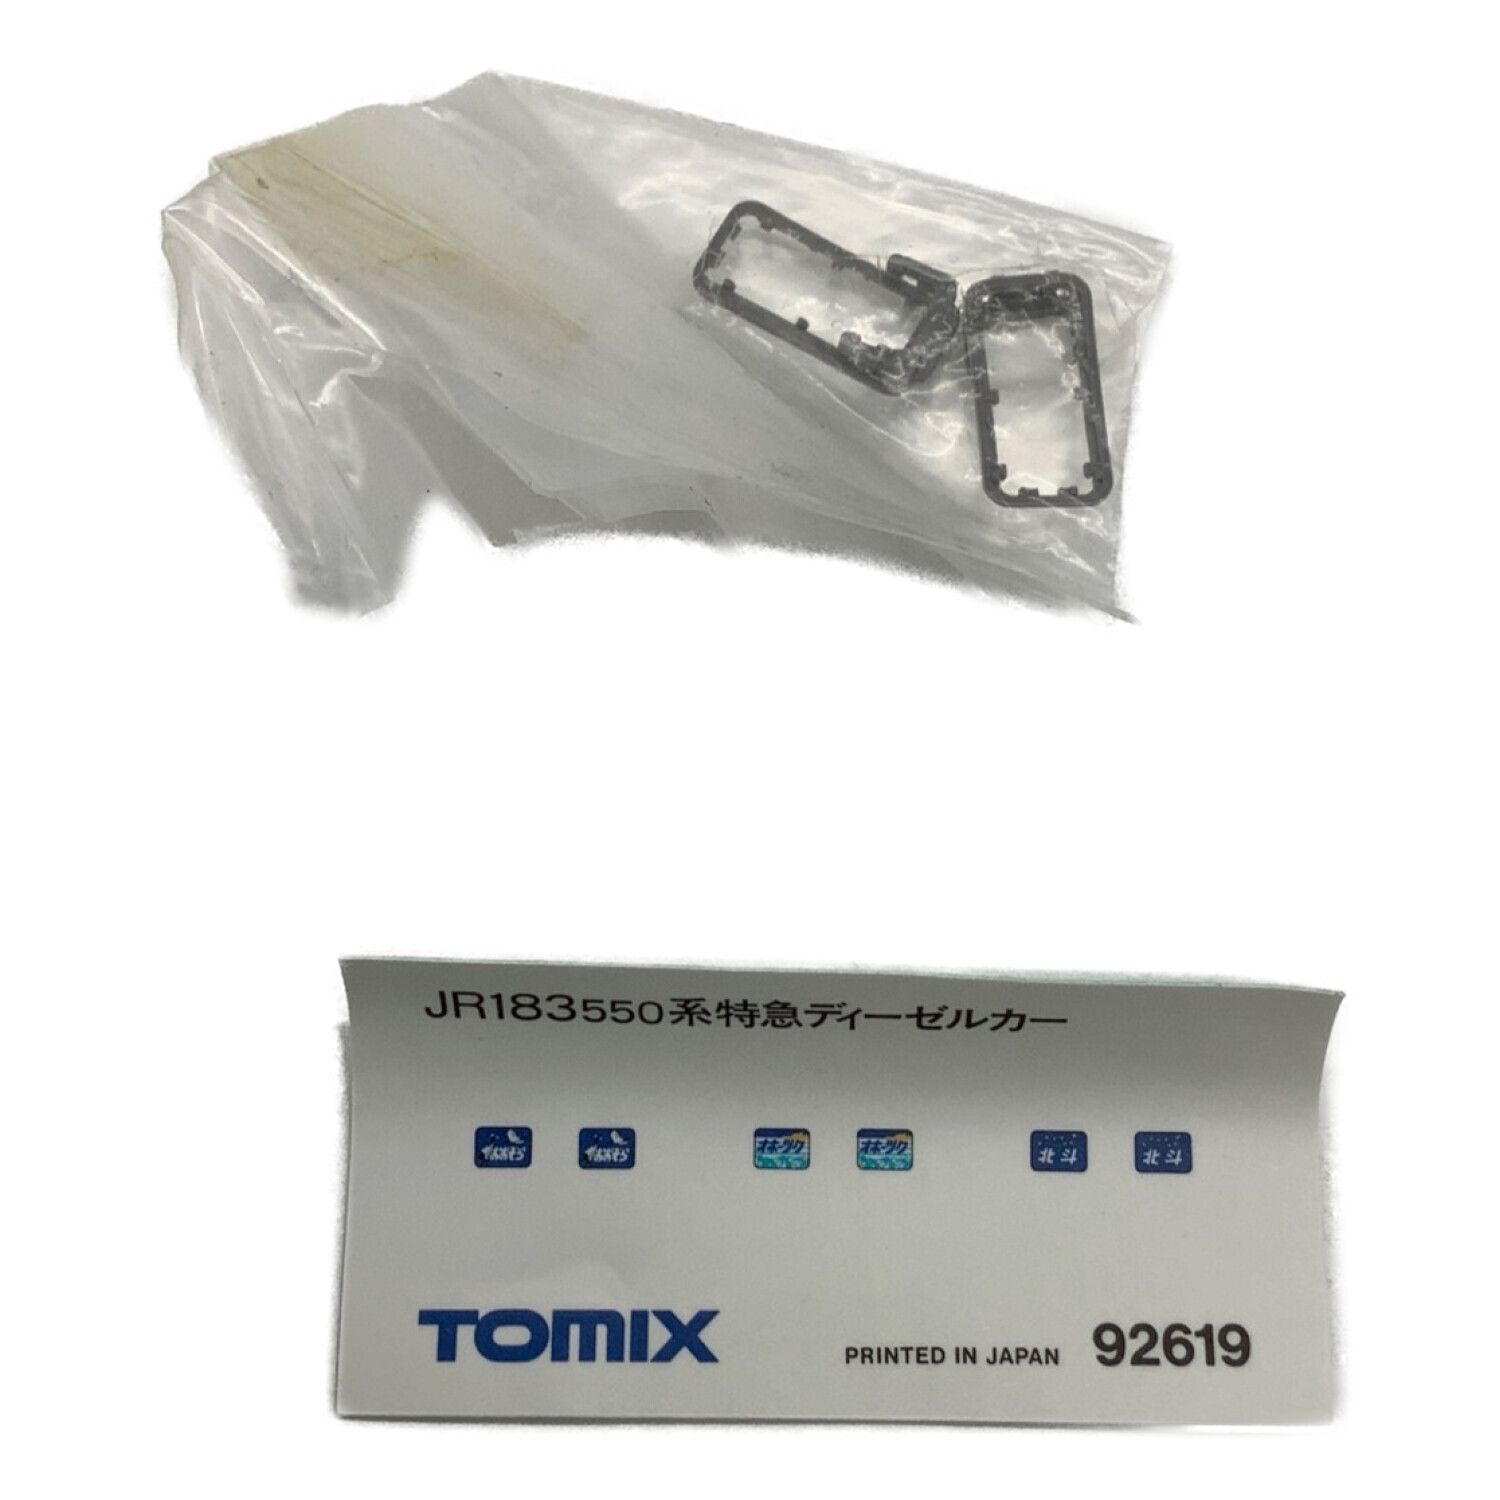 TOMIX (トミックス) Nゲージ JRキハ183 550系特急ディーゼルカー 92619 